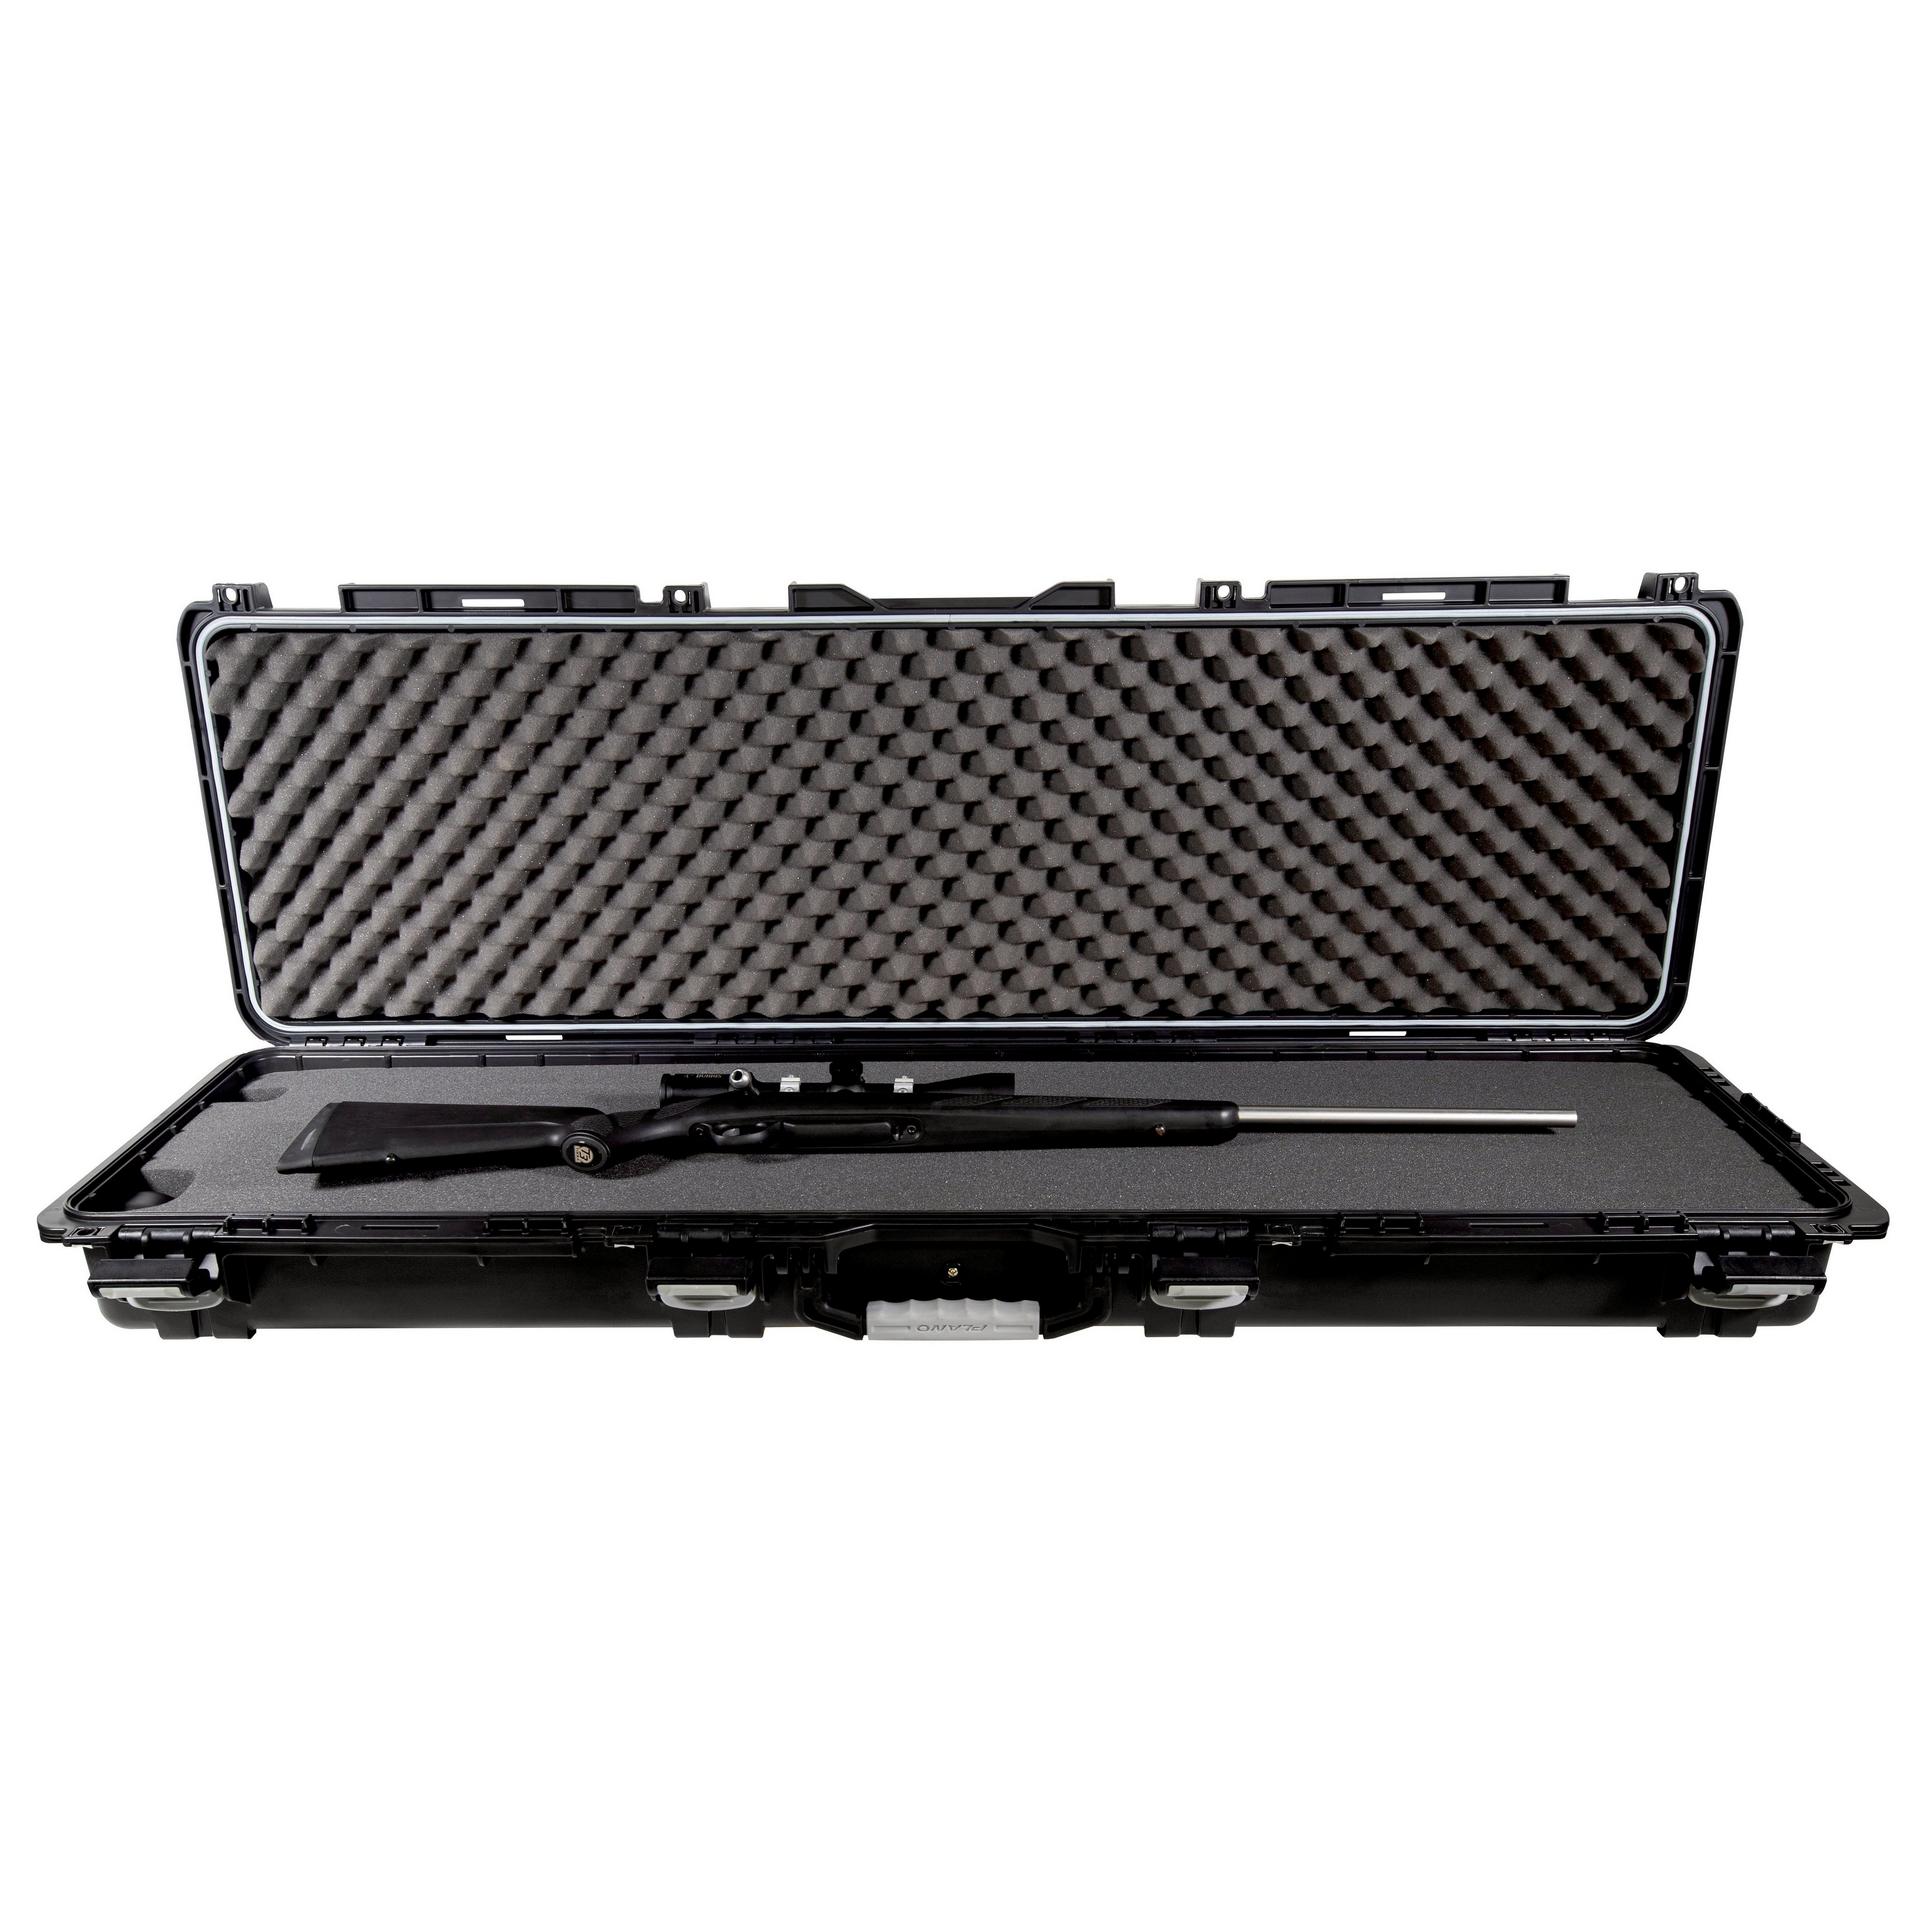 Field Locker® Element Double Gun Case | Plano®